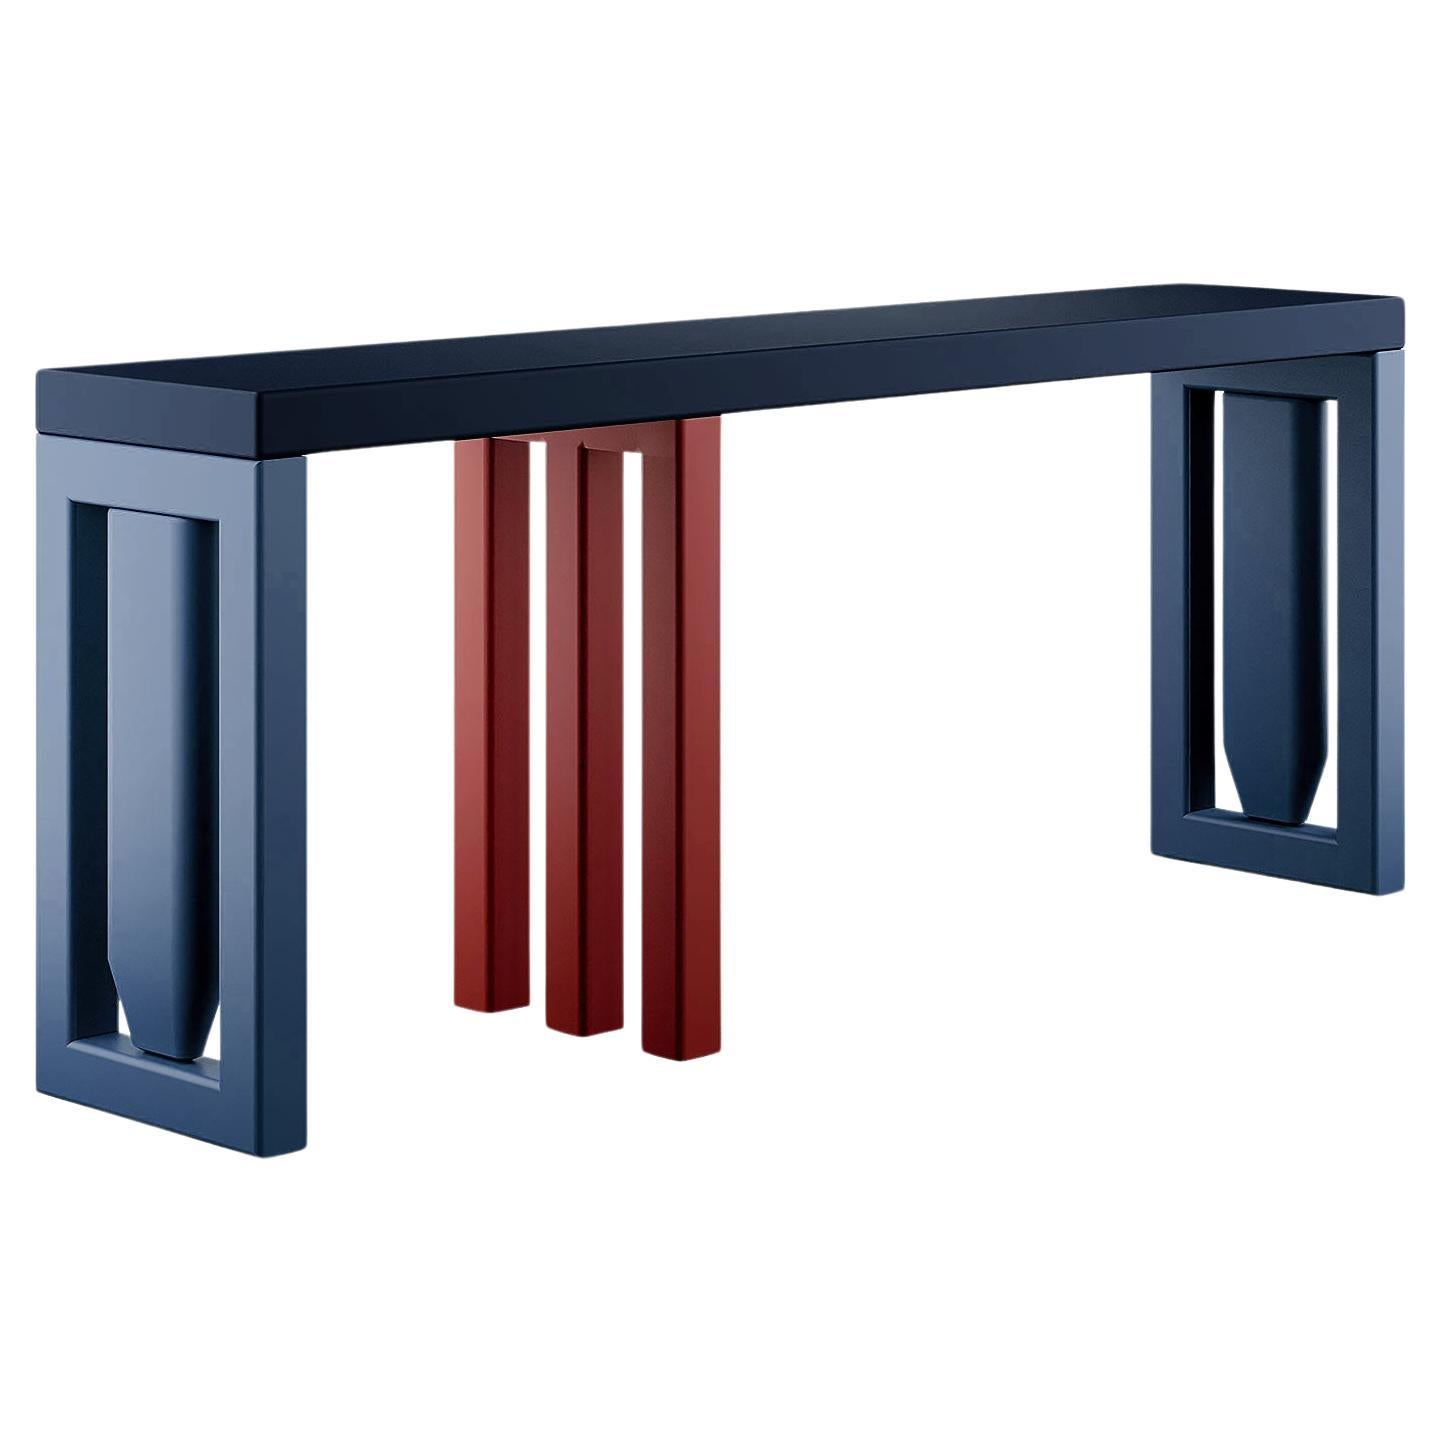 Minimalistischer moderner Konsolentisch mit drei Beinen aus Holz in Blau und Rot mit mattem Lack